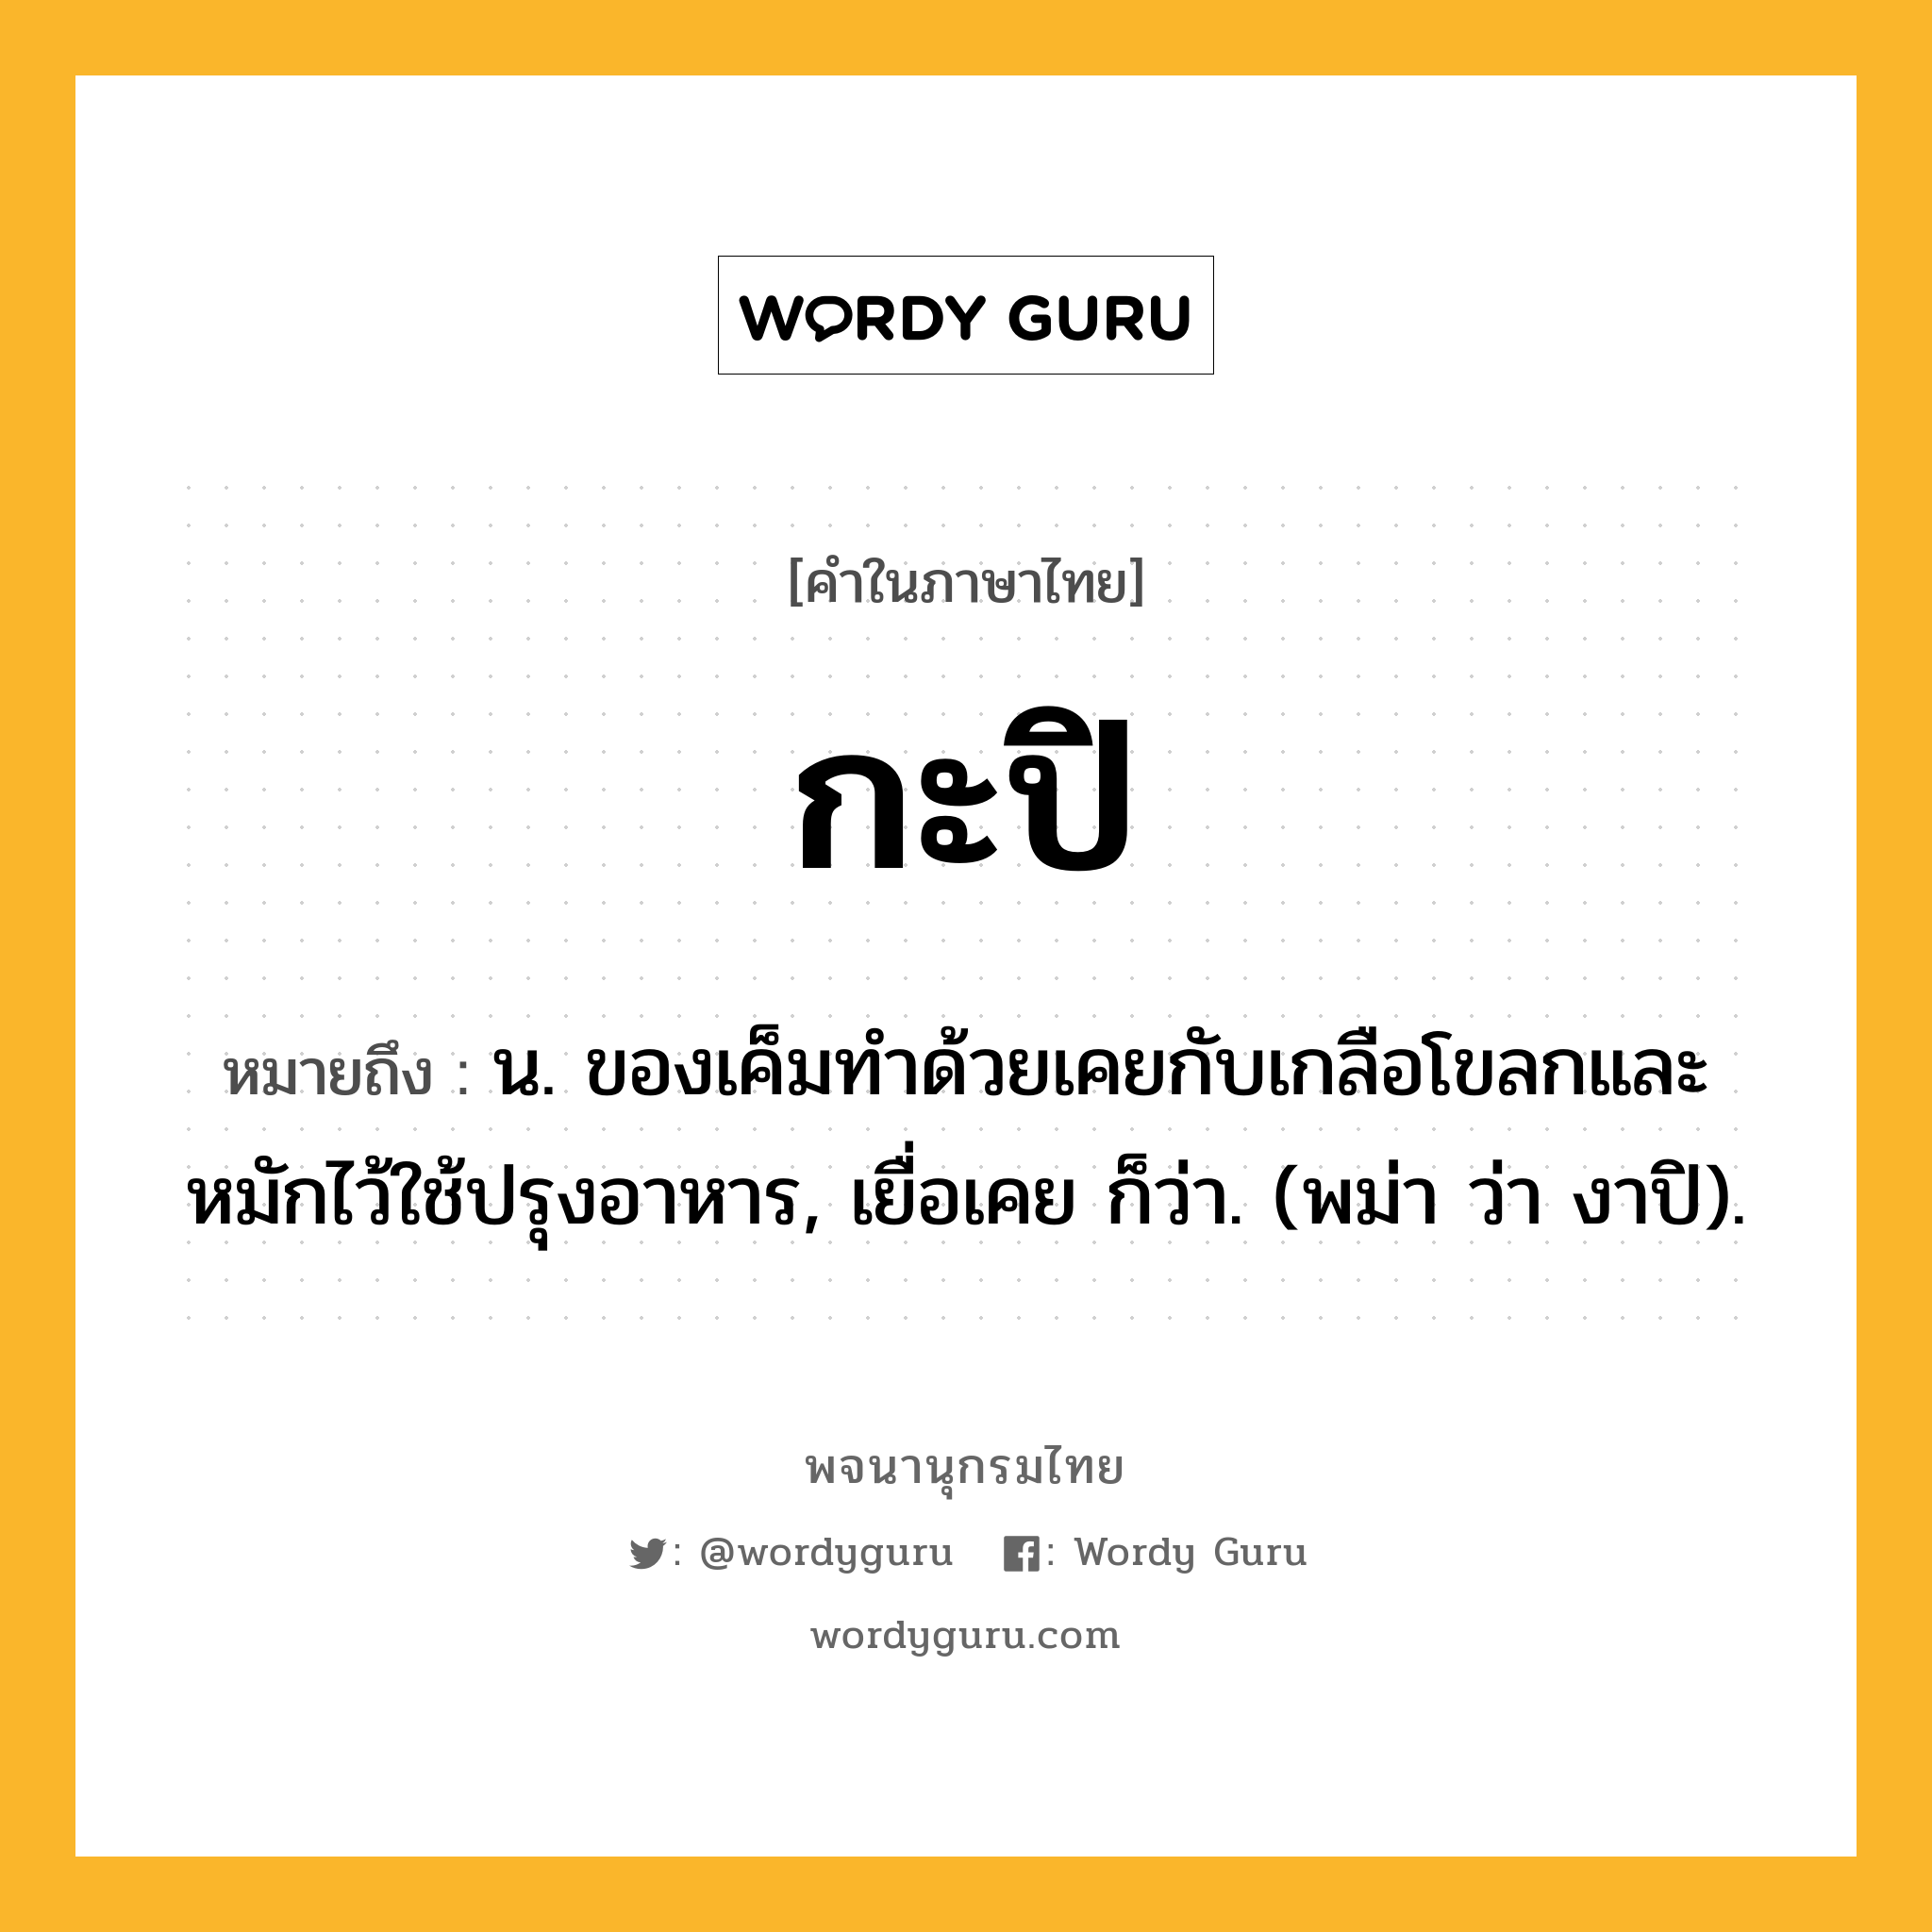 กะปิ หมายถึงอะไร?, คำในภาษาไทย กะปิ หมายถึง น. ของเค็มทําด้วยเคยกับเกลือโขลกและหมักไว้ใช้ปรุงอาหาร, เยื่อเคย ก็ว่า. (พม่า ว่า งาปิ).